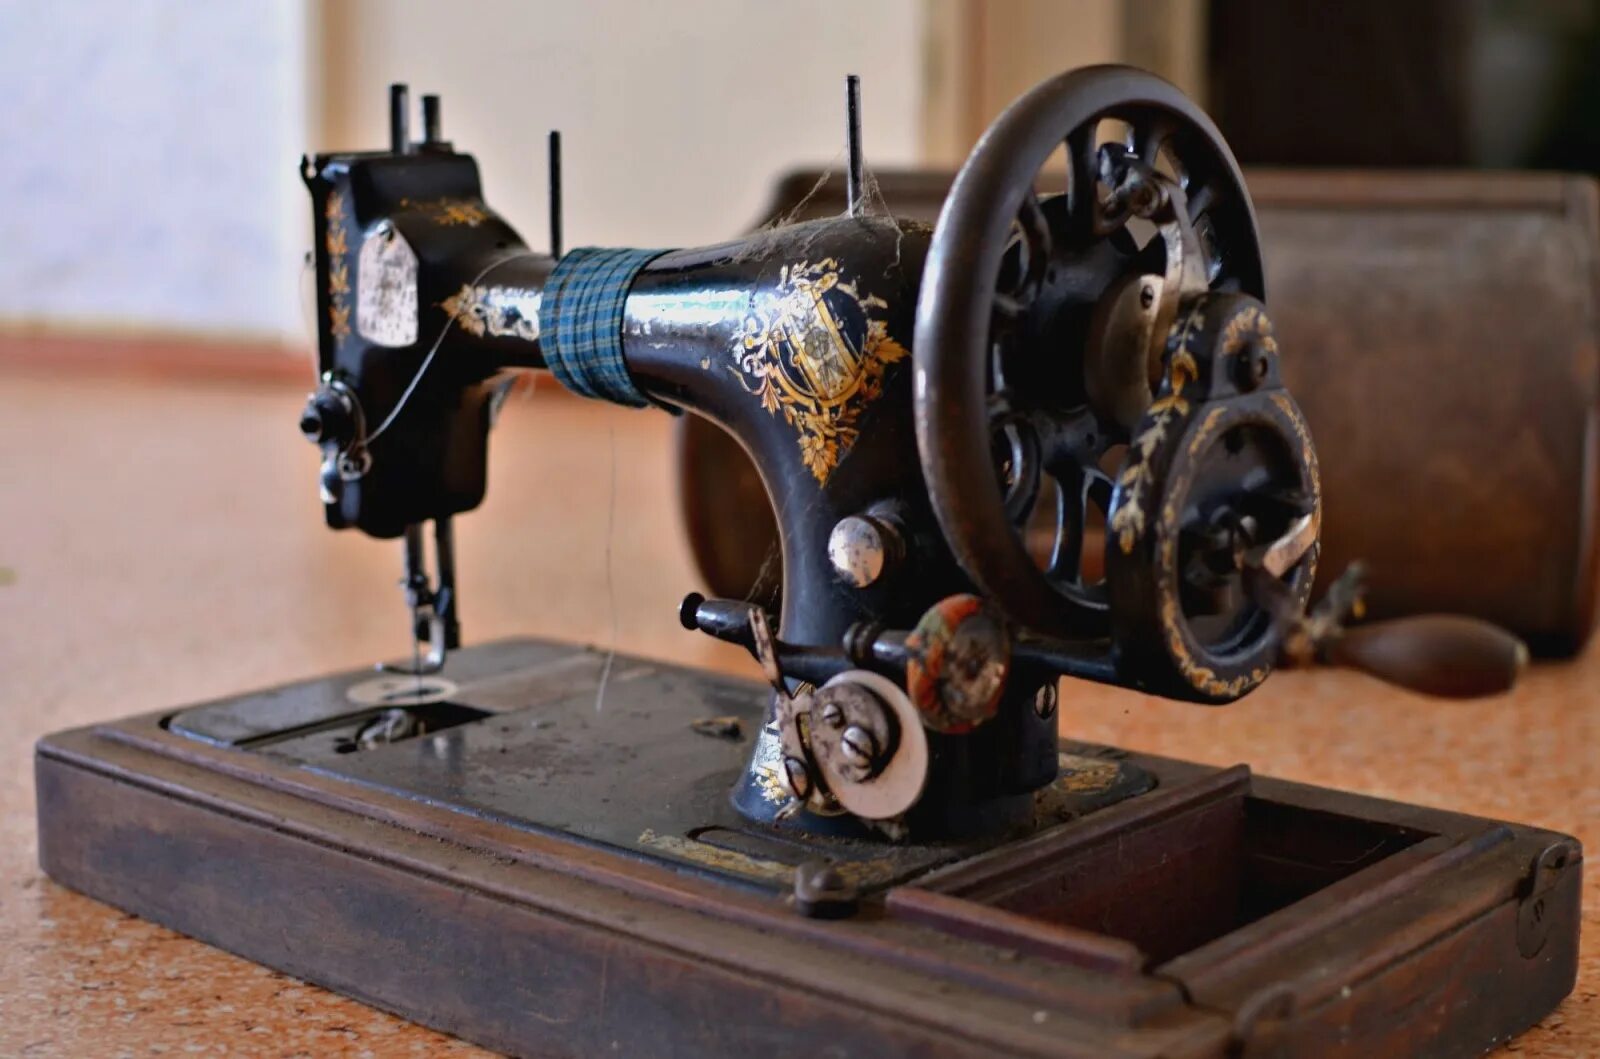 Роликов швейная машинка. Швейная машинка (Zinger super 2001). Швейная машинка Зингер ручная. Ручная швейная машинка (Zinger super 2001). Швейная машина Зингер первый выпуск.